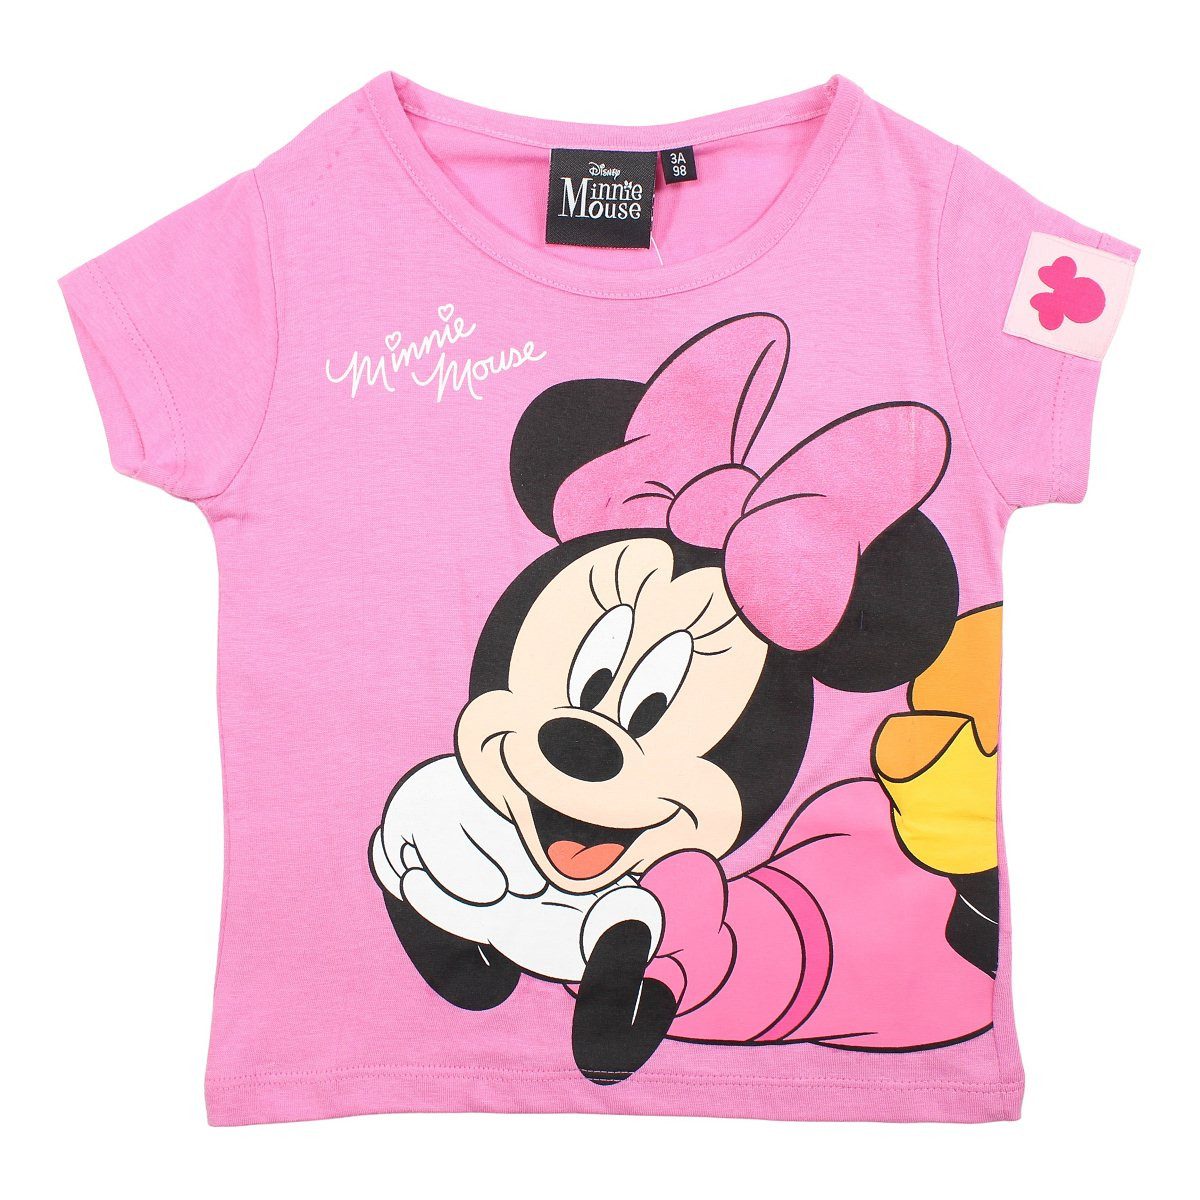 Disney Print-Shirt Disney Minnie Maus Mädchen Kinder T-Shirt Gr. 98 bis 128 reine Baumwolle